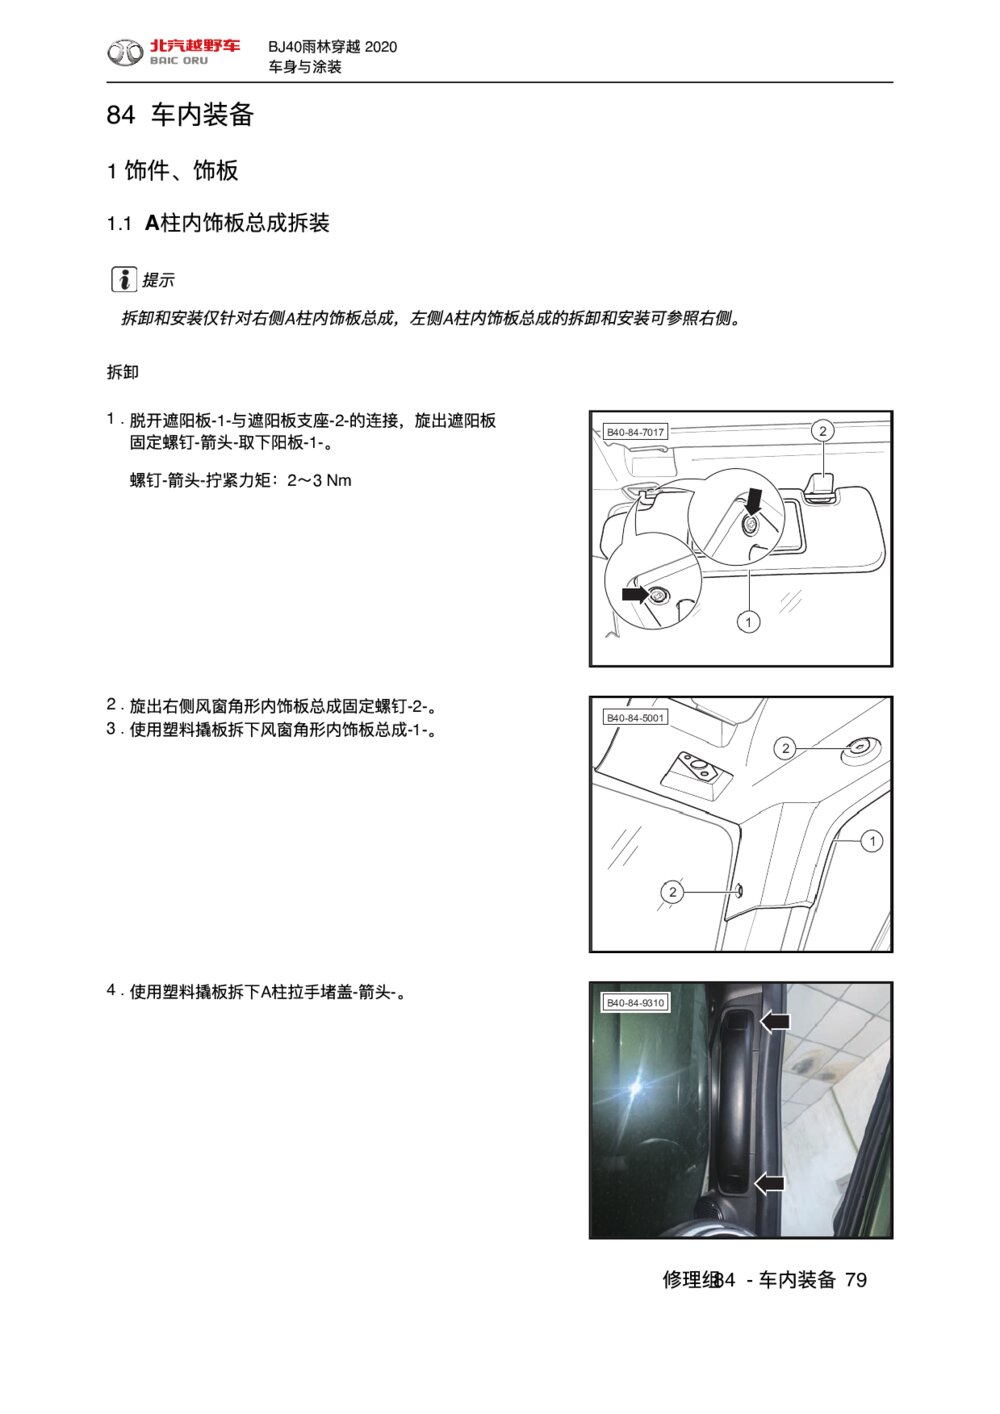 2020款北京BJ40车内装备饰件、饰板拆装手册